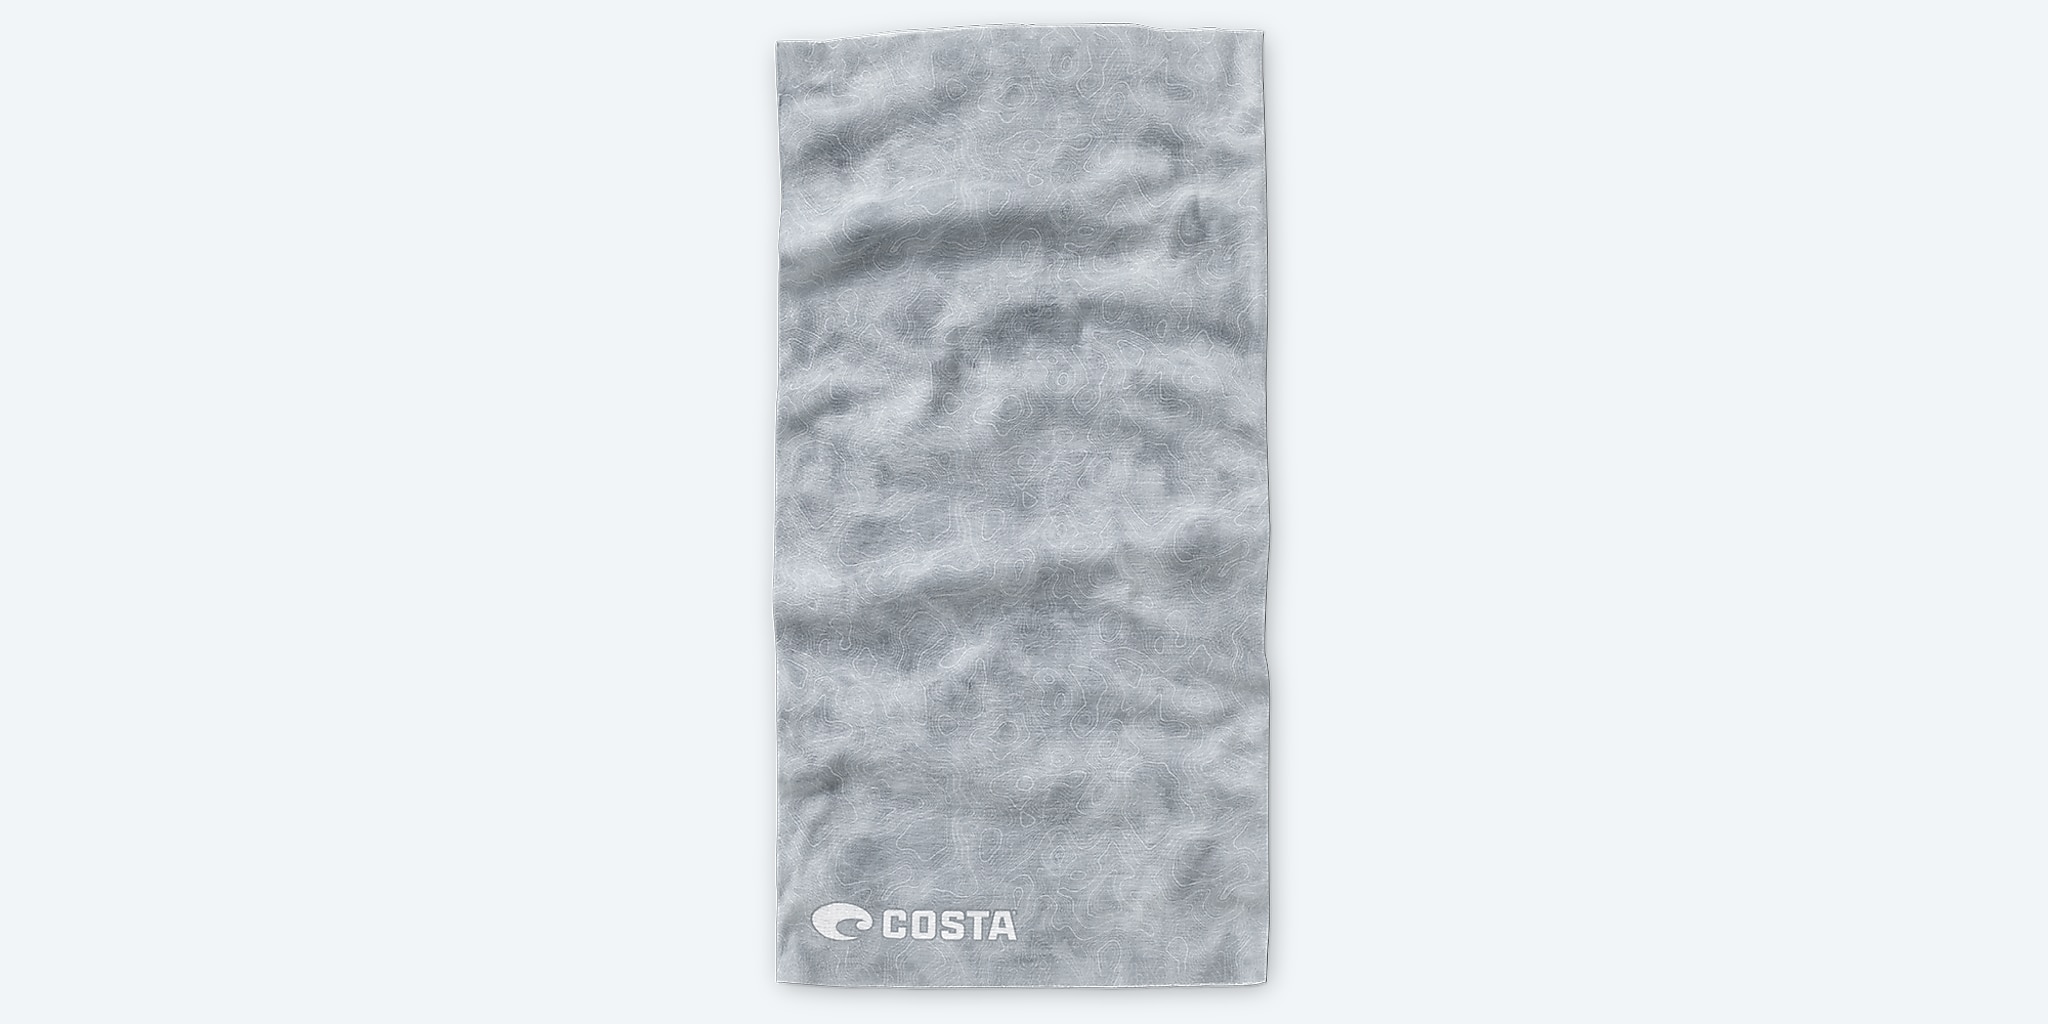 Costa Topo C-Mask